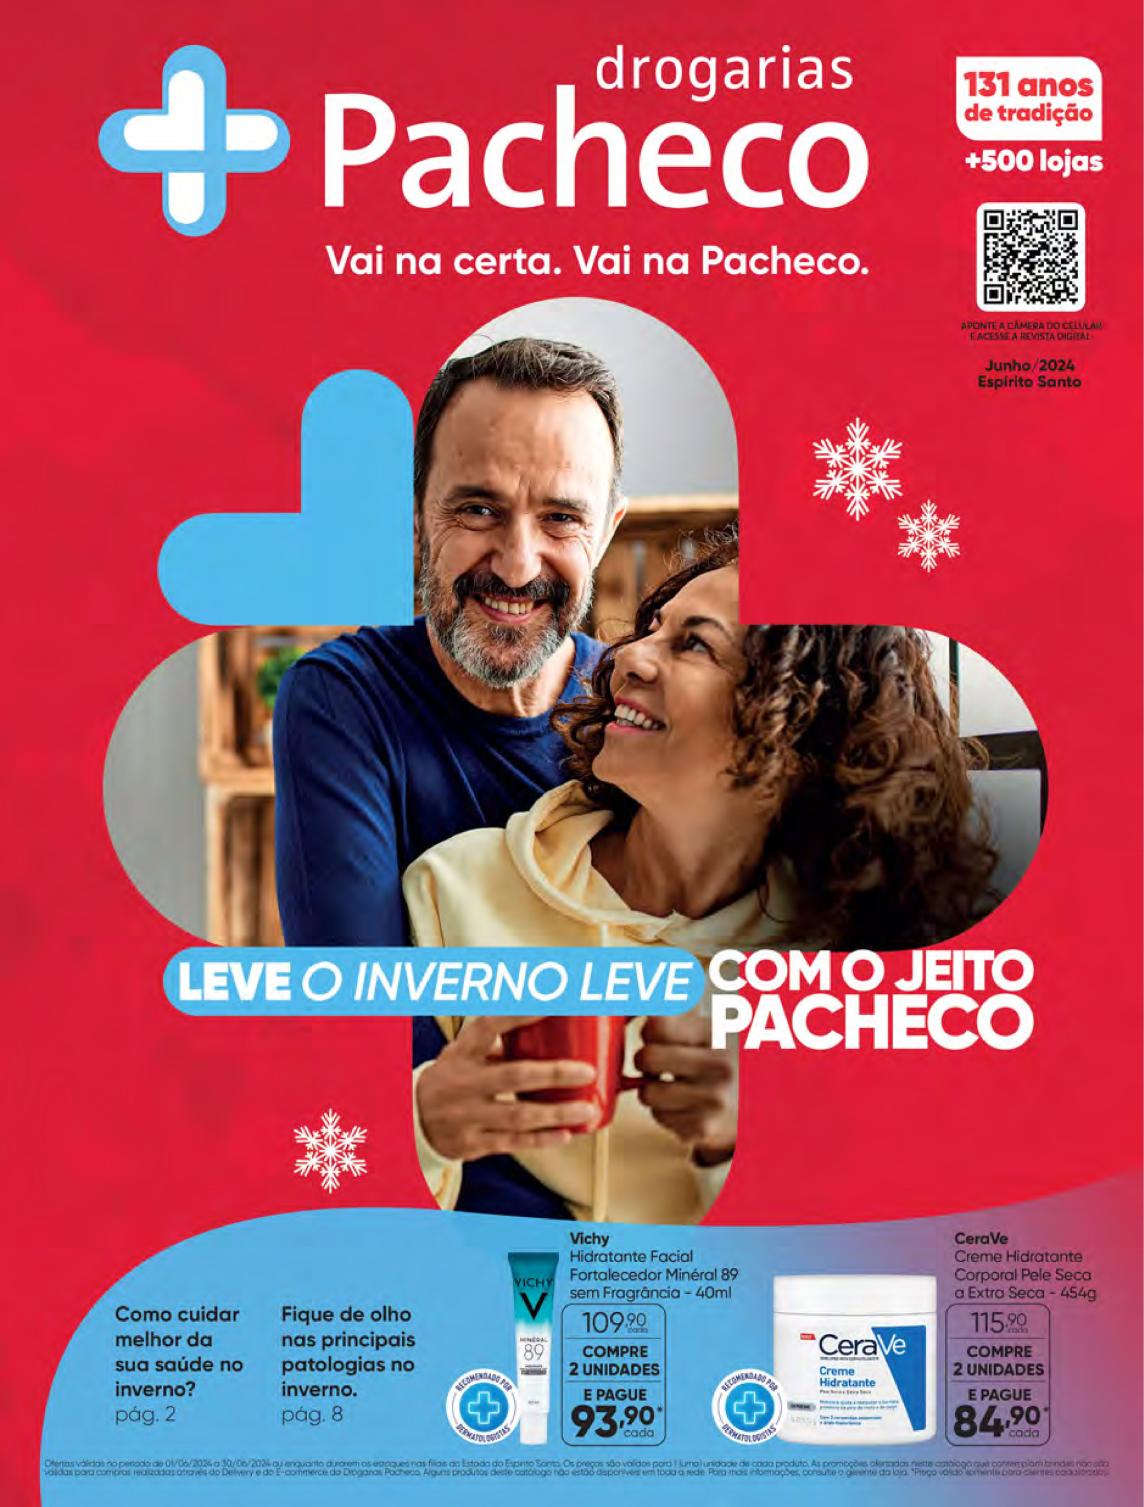 Drogarias Pacheco Apk Download for Android- Latest version 4.7.5- br.com.app .meuvivasaude.descontos.pacheco